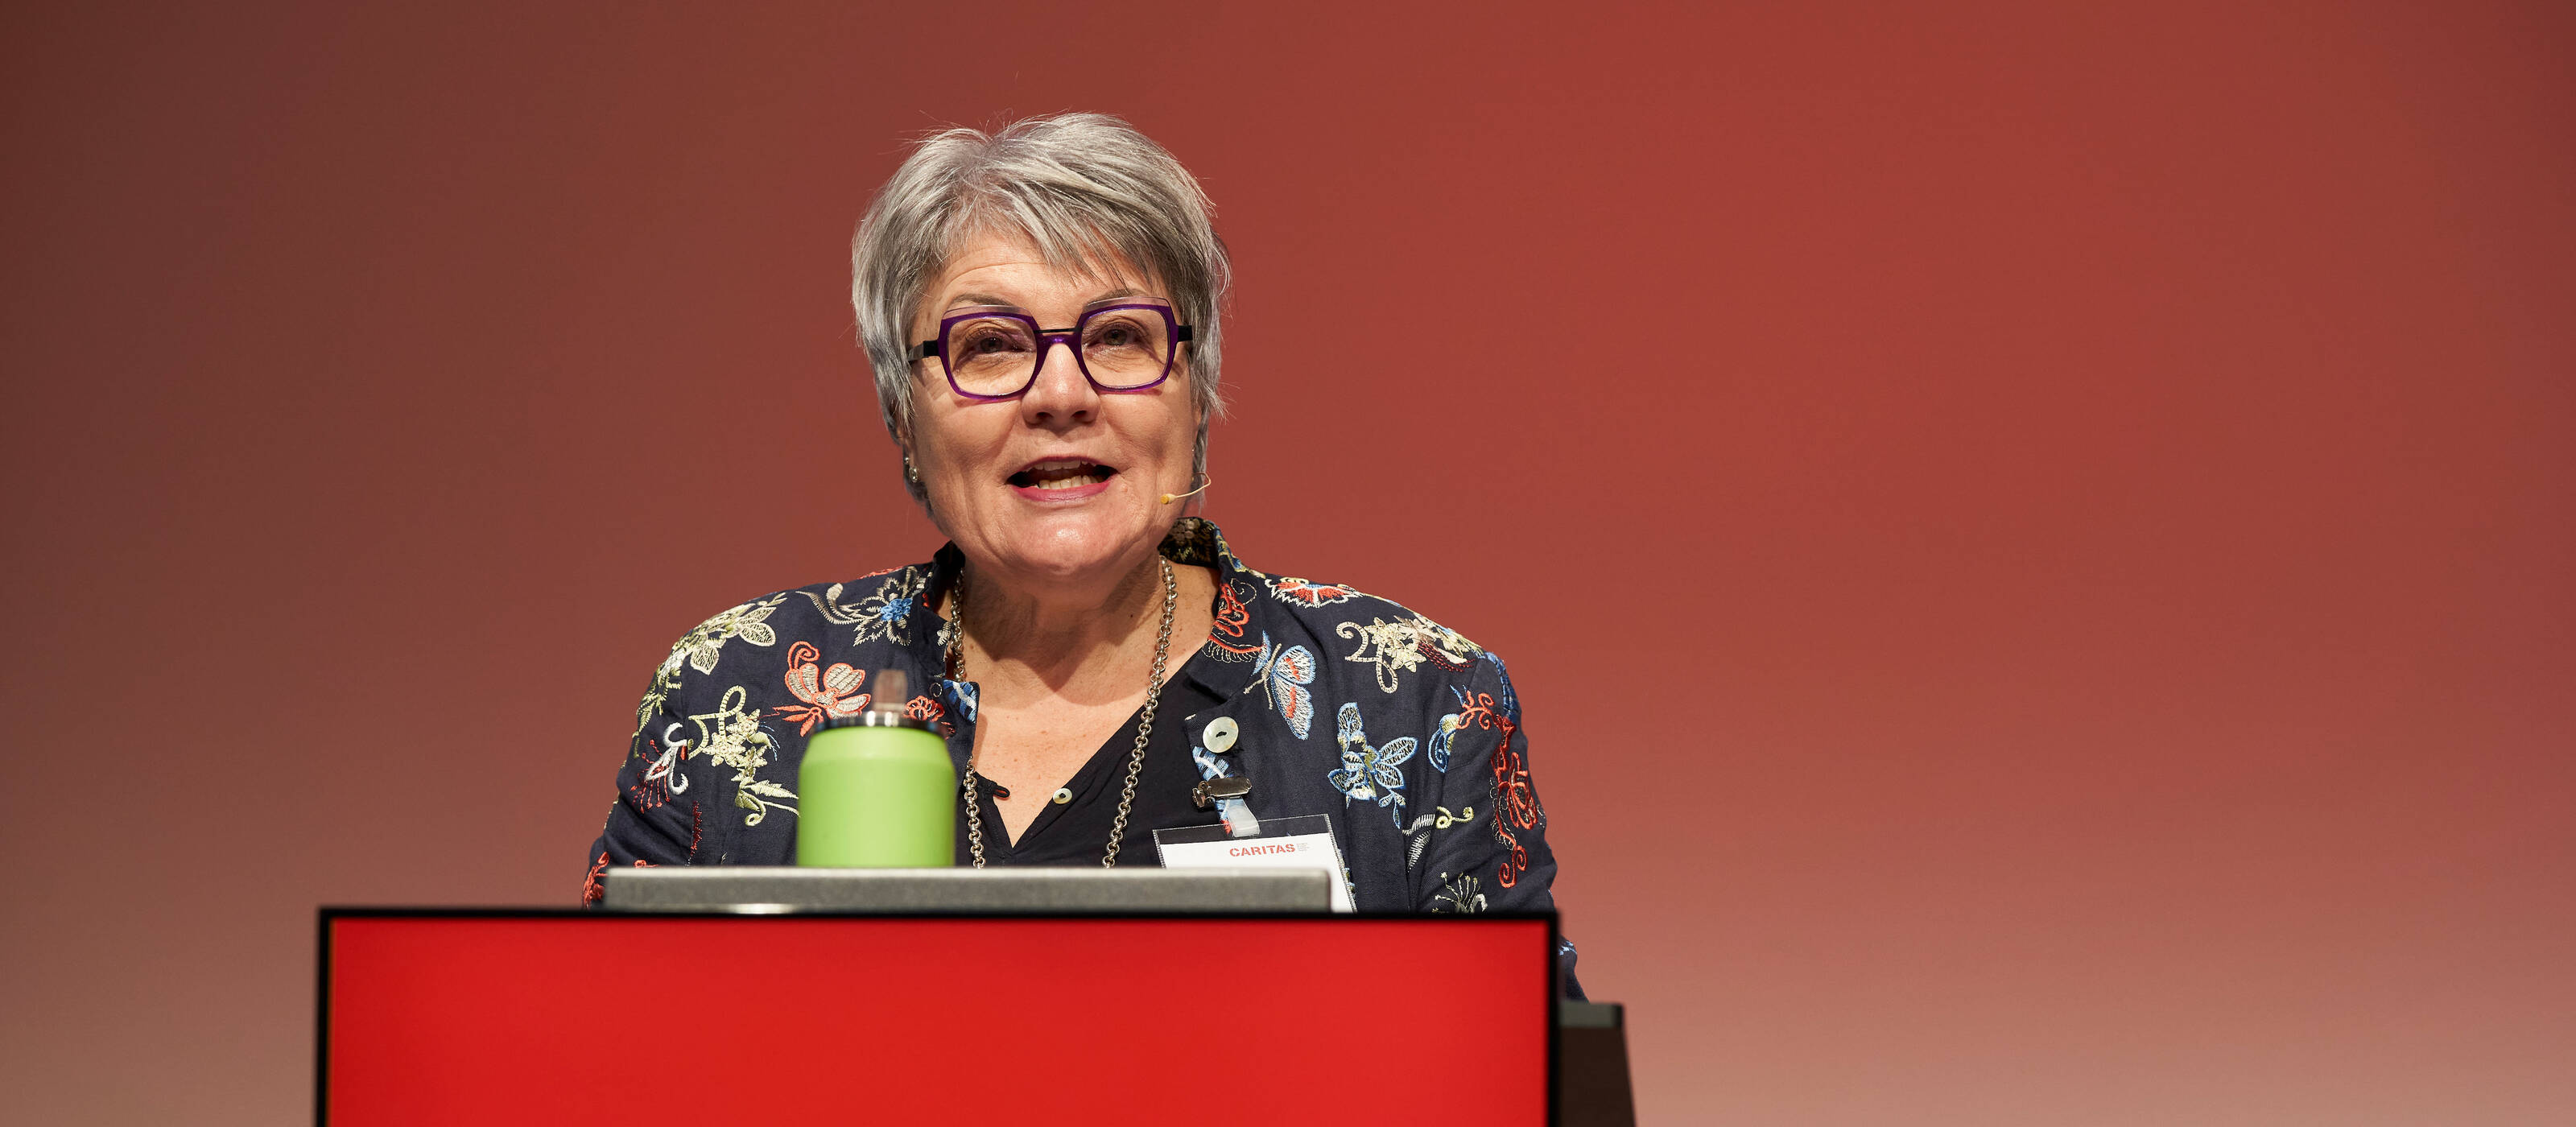 Monika Maire-Hefti, présidente de Caritas Suisse, a ouvert le Forum sur les inégalités sociales.